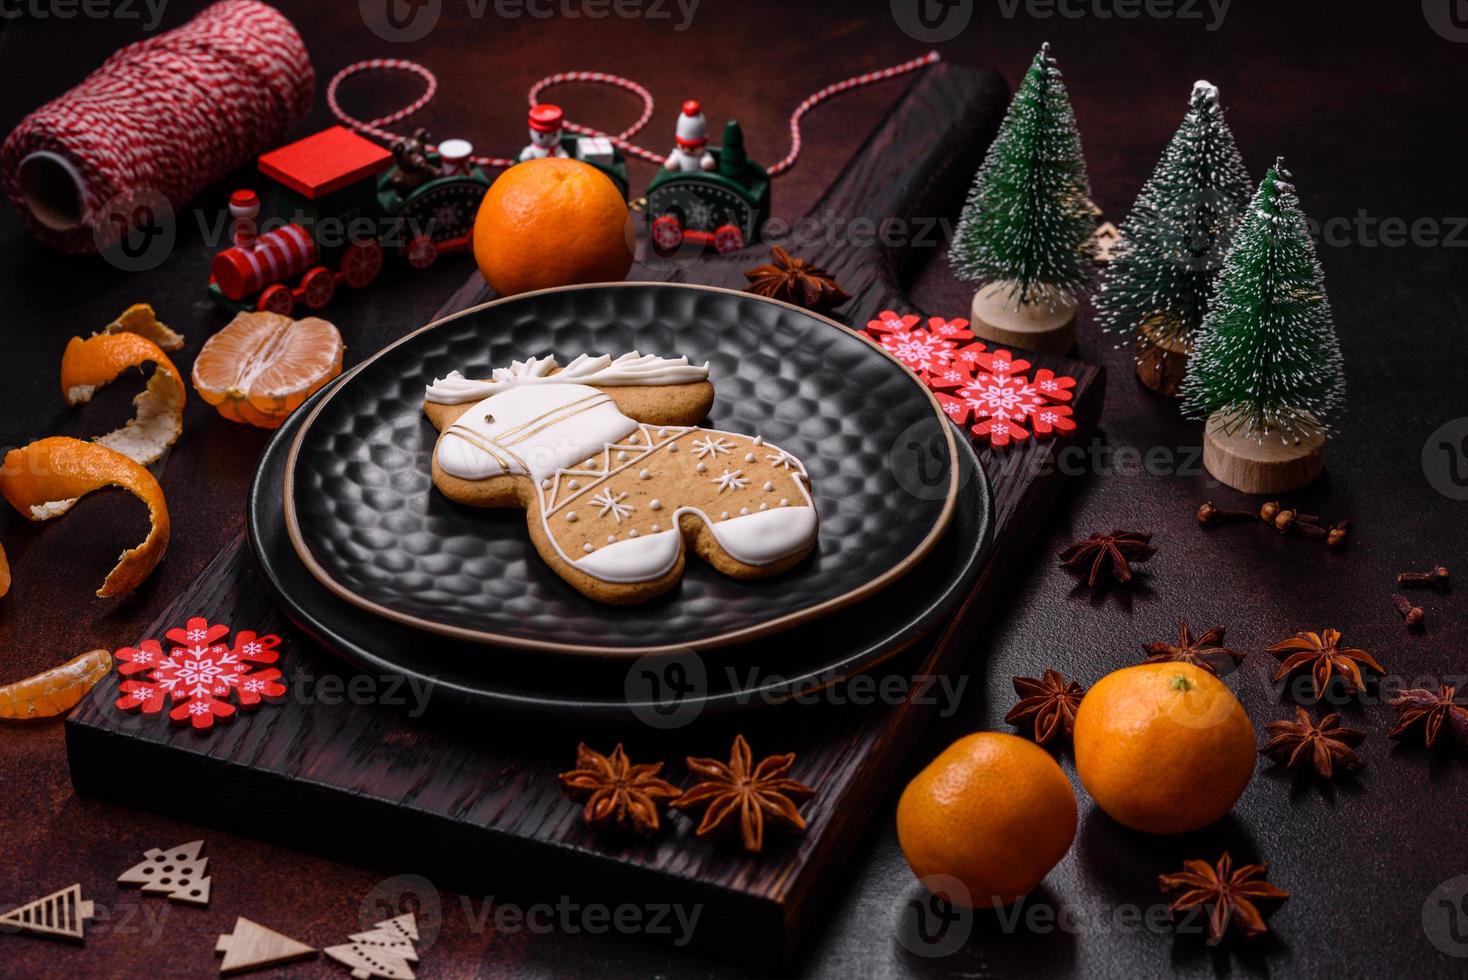 schöne weihnachtsdekorationen mit weihnachtsspielzeug, clementinen und lebkuchen foto